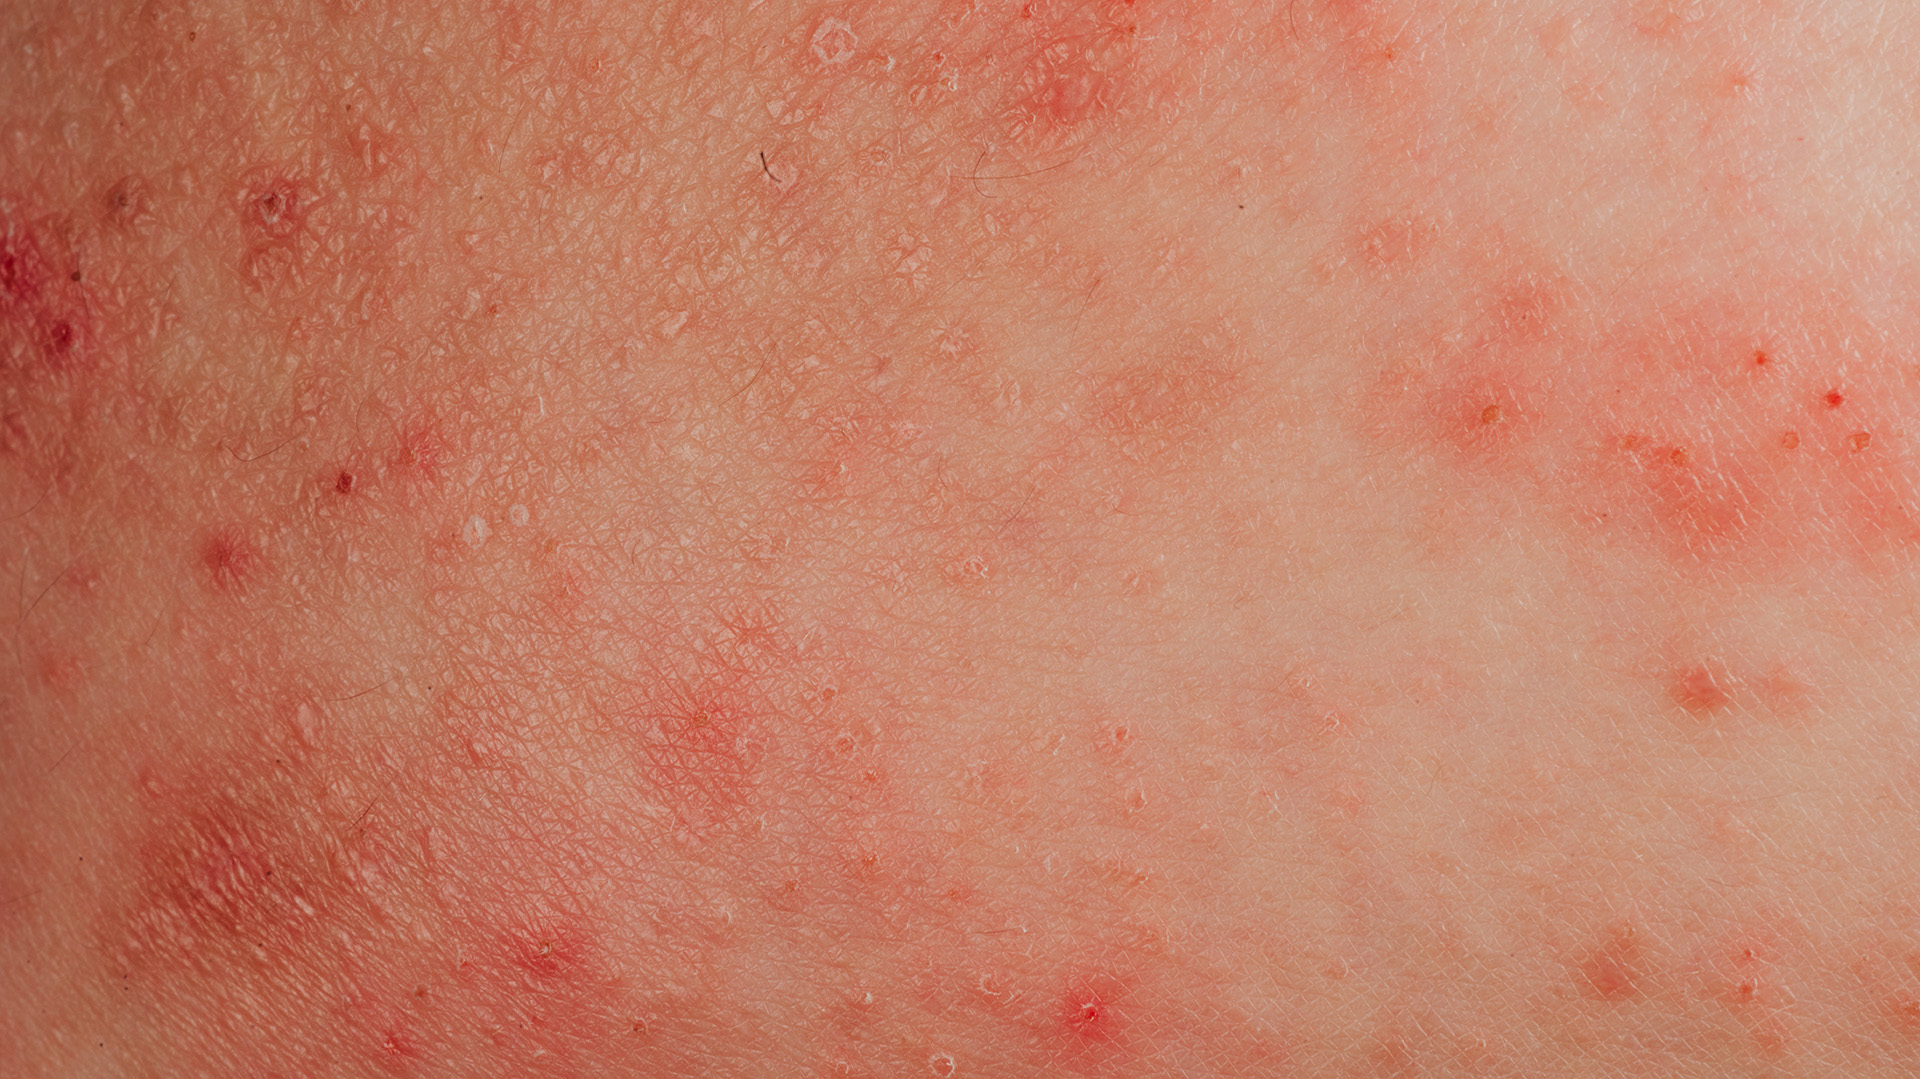 Es muy frecuente que la dermatitis coexista con otras enfermedades alérgicas, como asma, rinoconjuntivitis o alergia alimentaria (Getty Images)